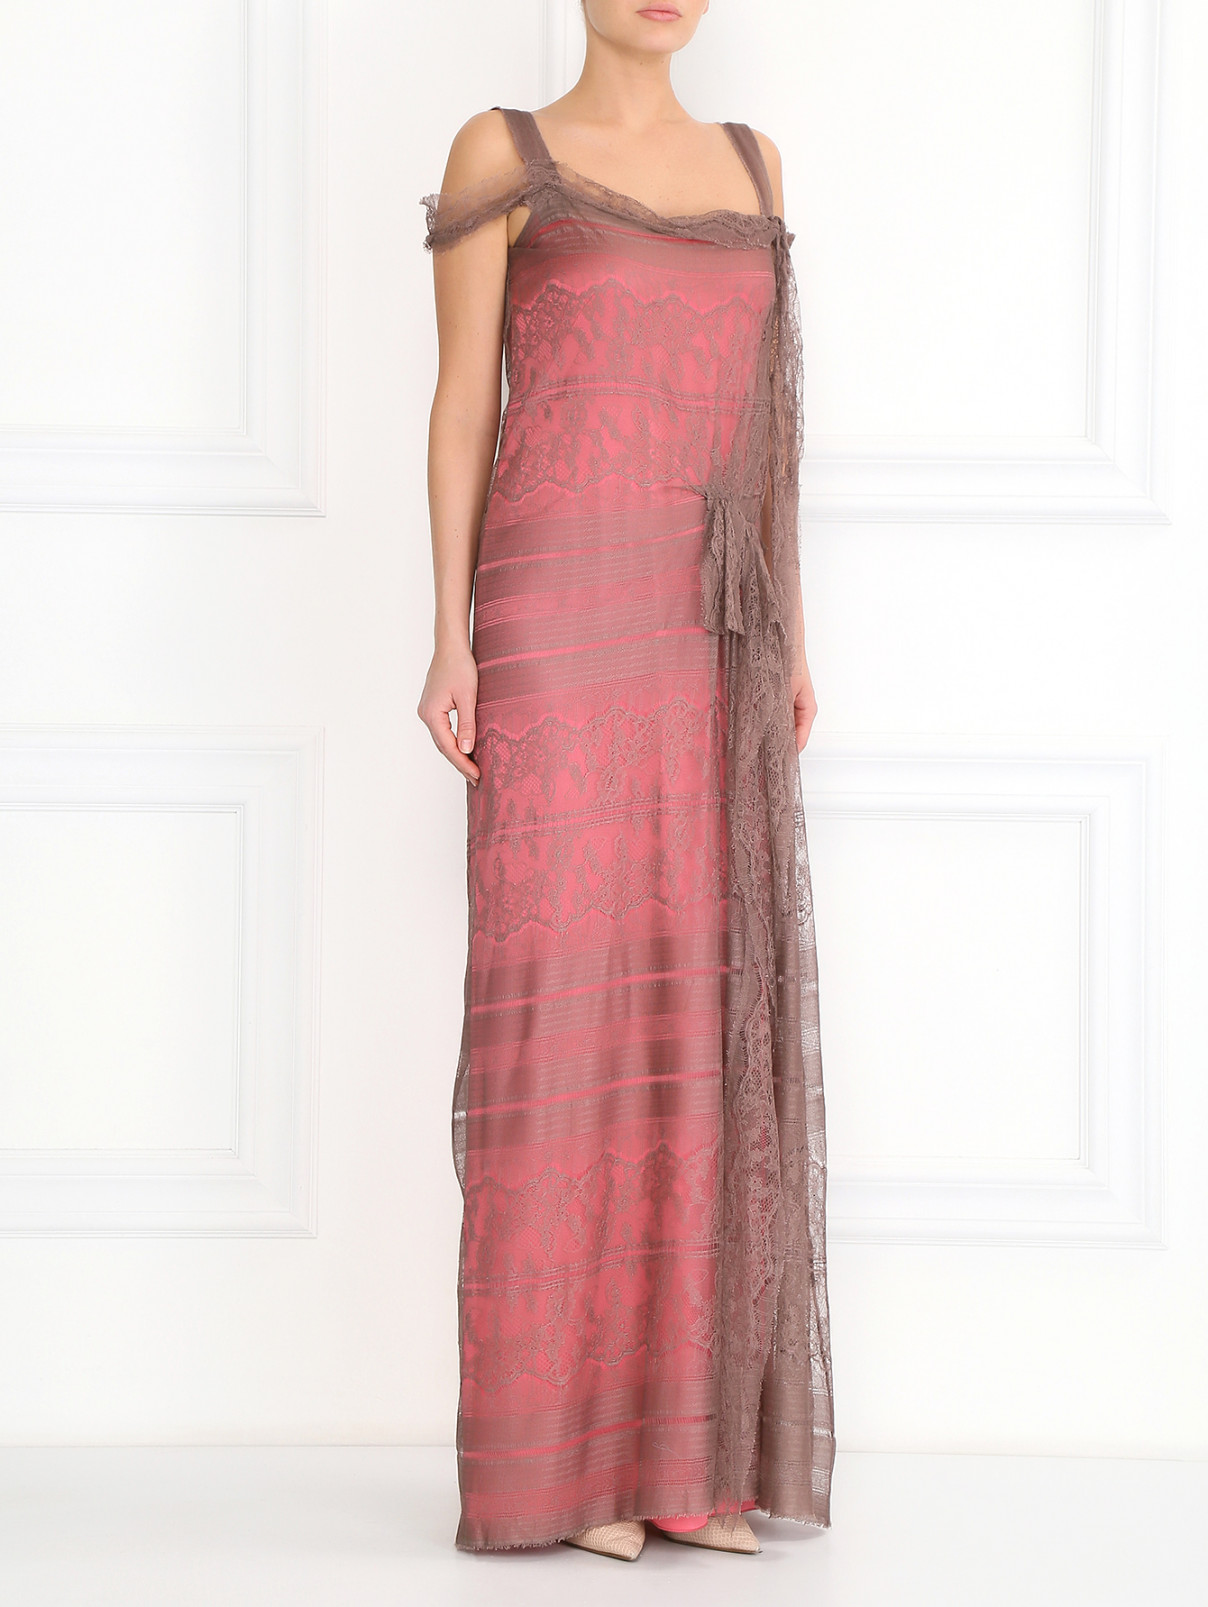 Платье-макси из шелка и кружева с бантами Alberta Ferretti  –  Модель Общий вид  – Цвет:  Розовый